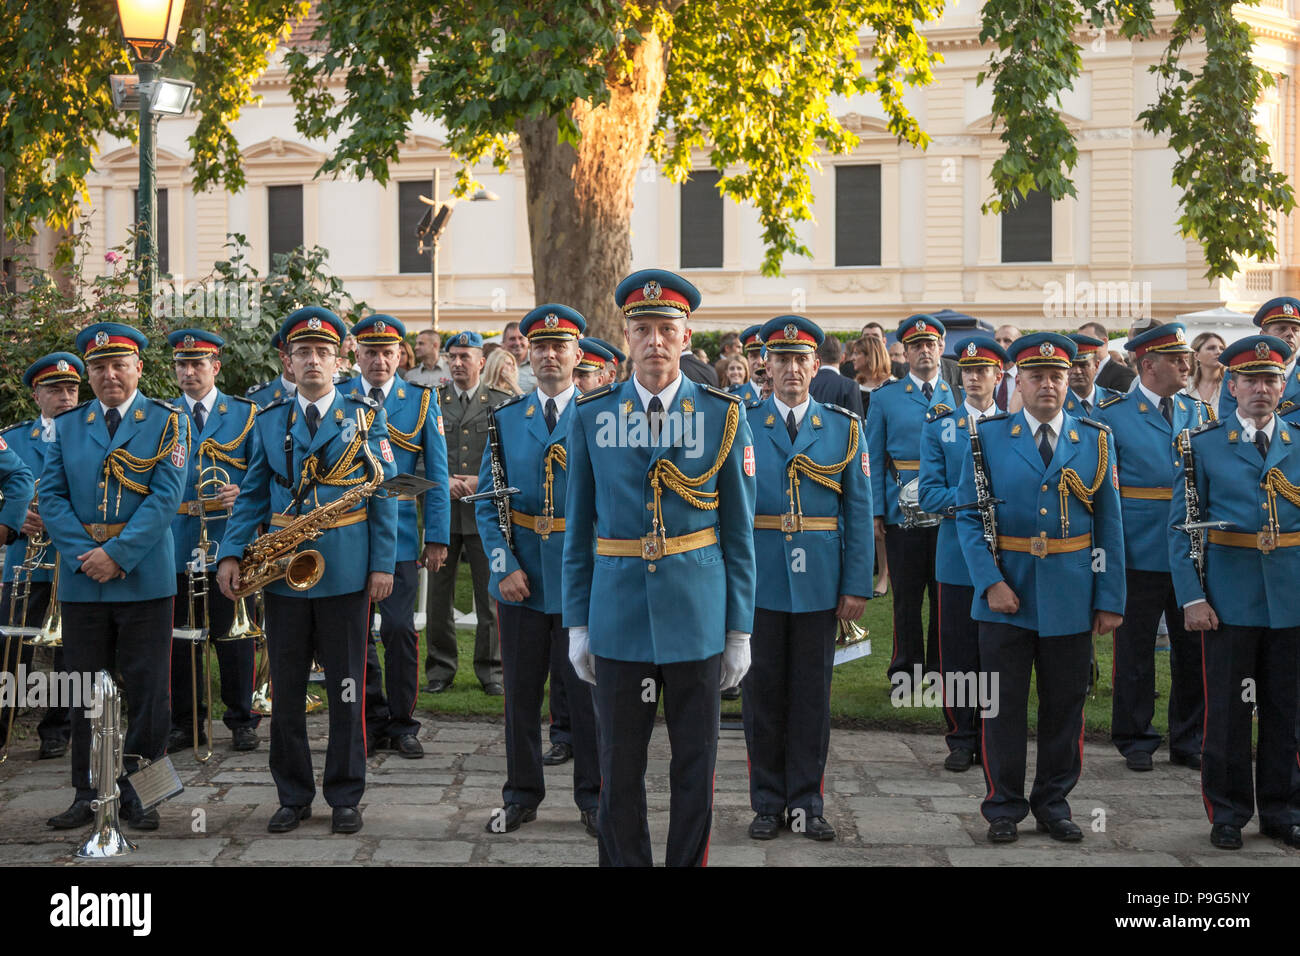 BELGRADE, SERBIE - Juillet 14, 2018 : l'armée serbe en bande uniforme officiel et la position attente pour effectuer au cours d'une cérémonie à l'Ambassade de France de Belgrade Banque D'Images